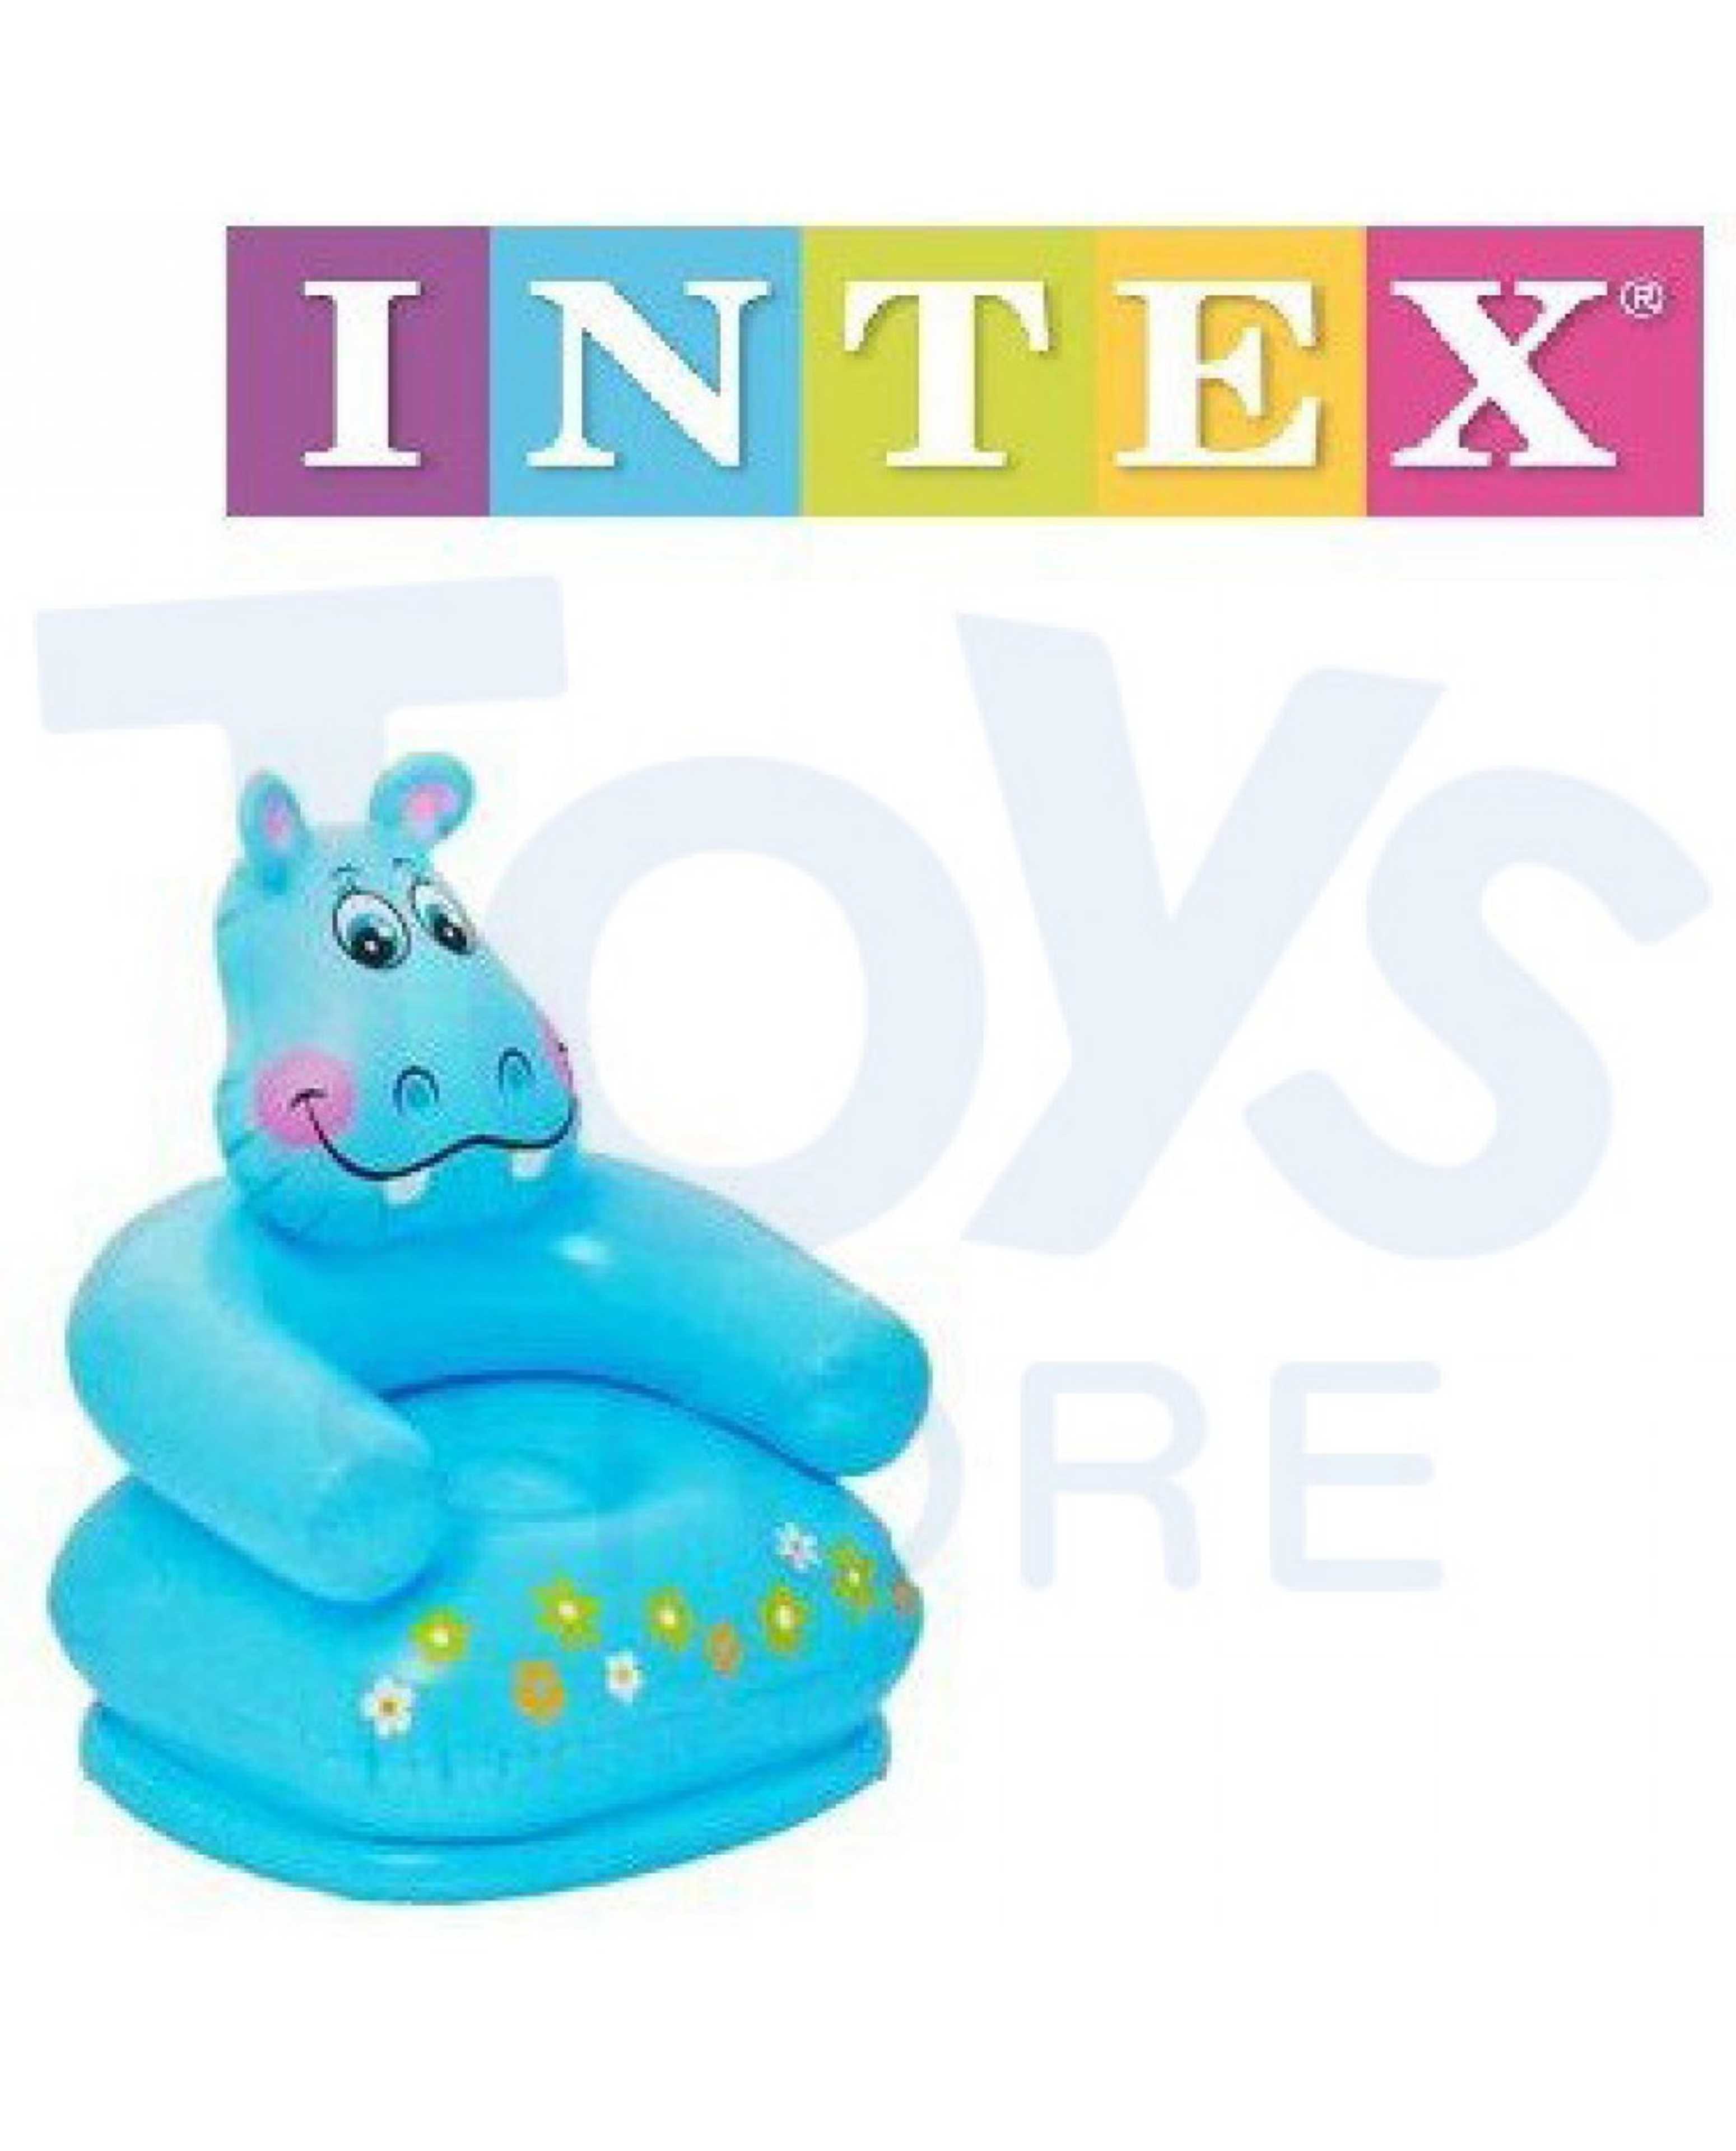 INTEX - HIPPO CHAIR 